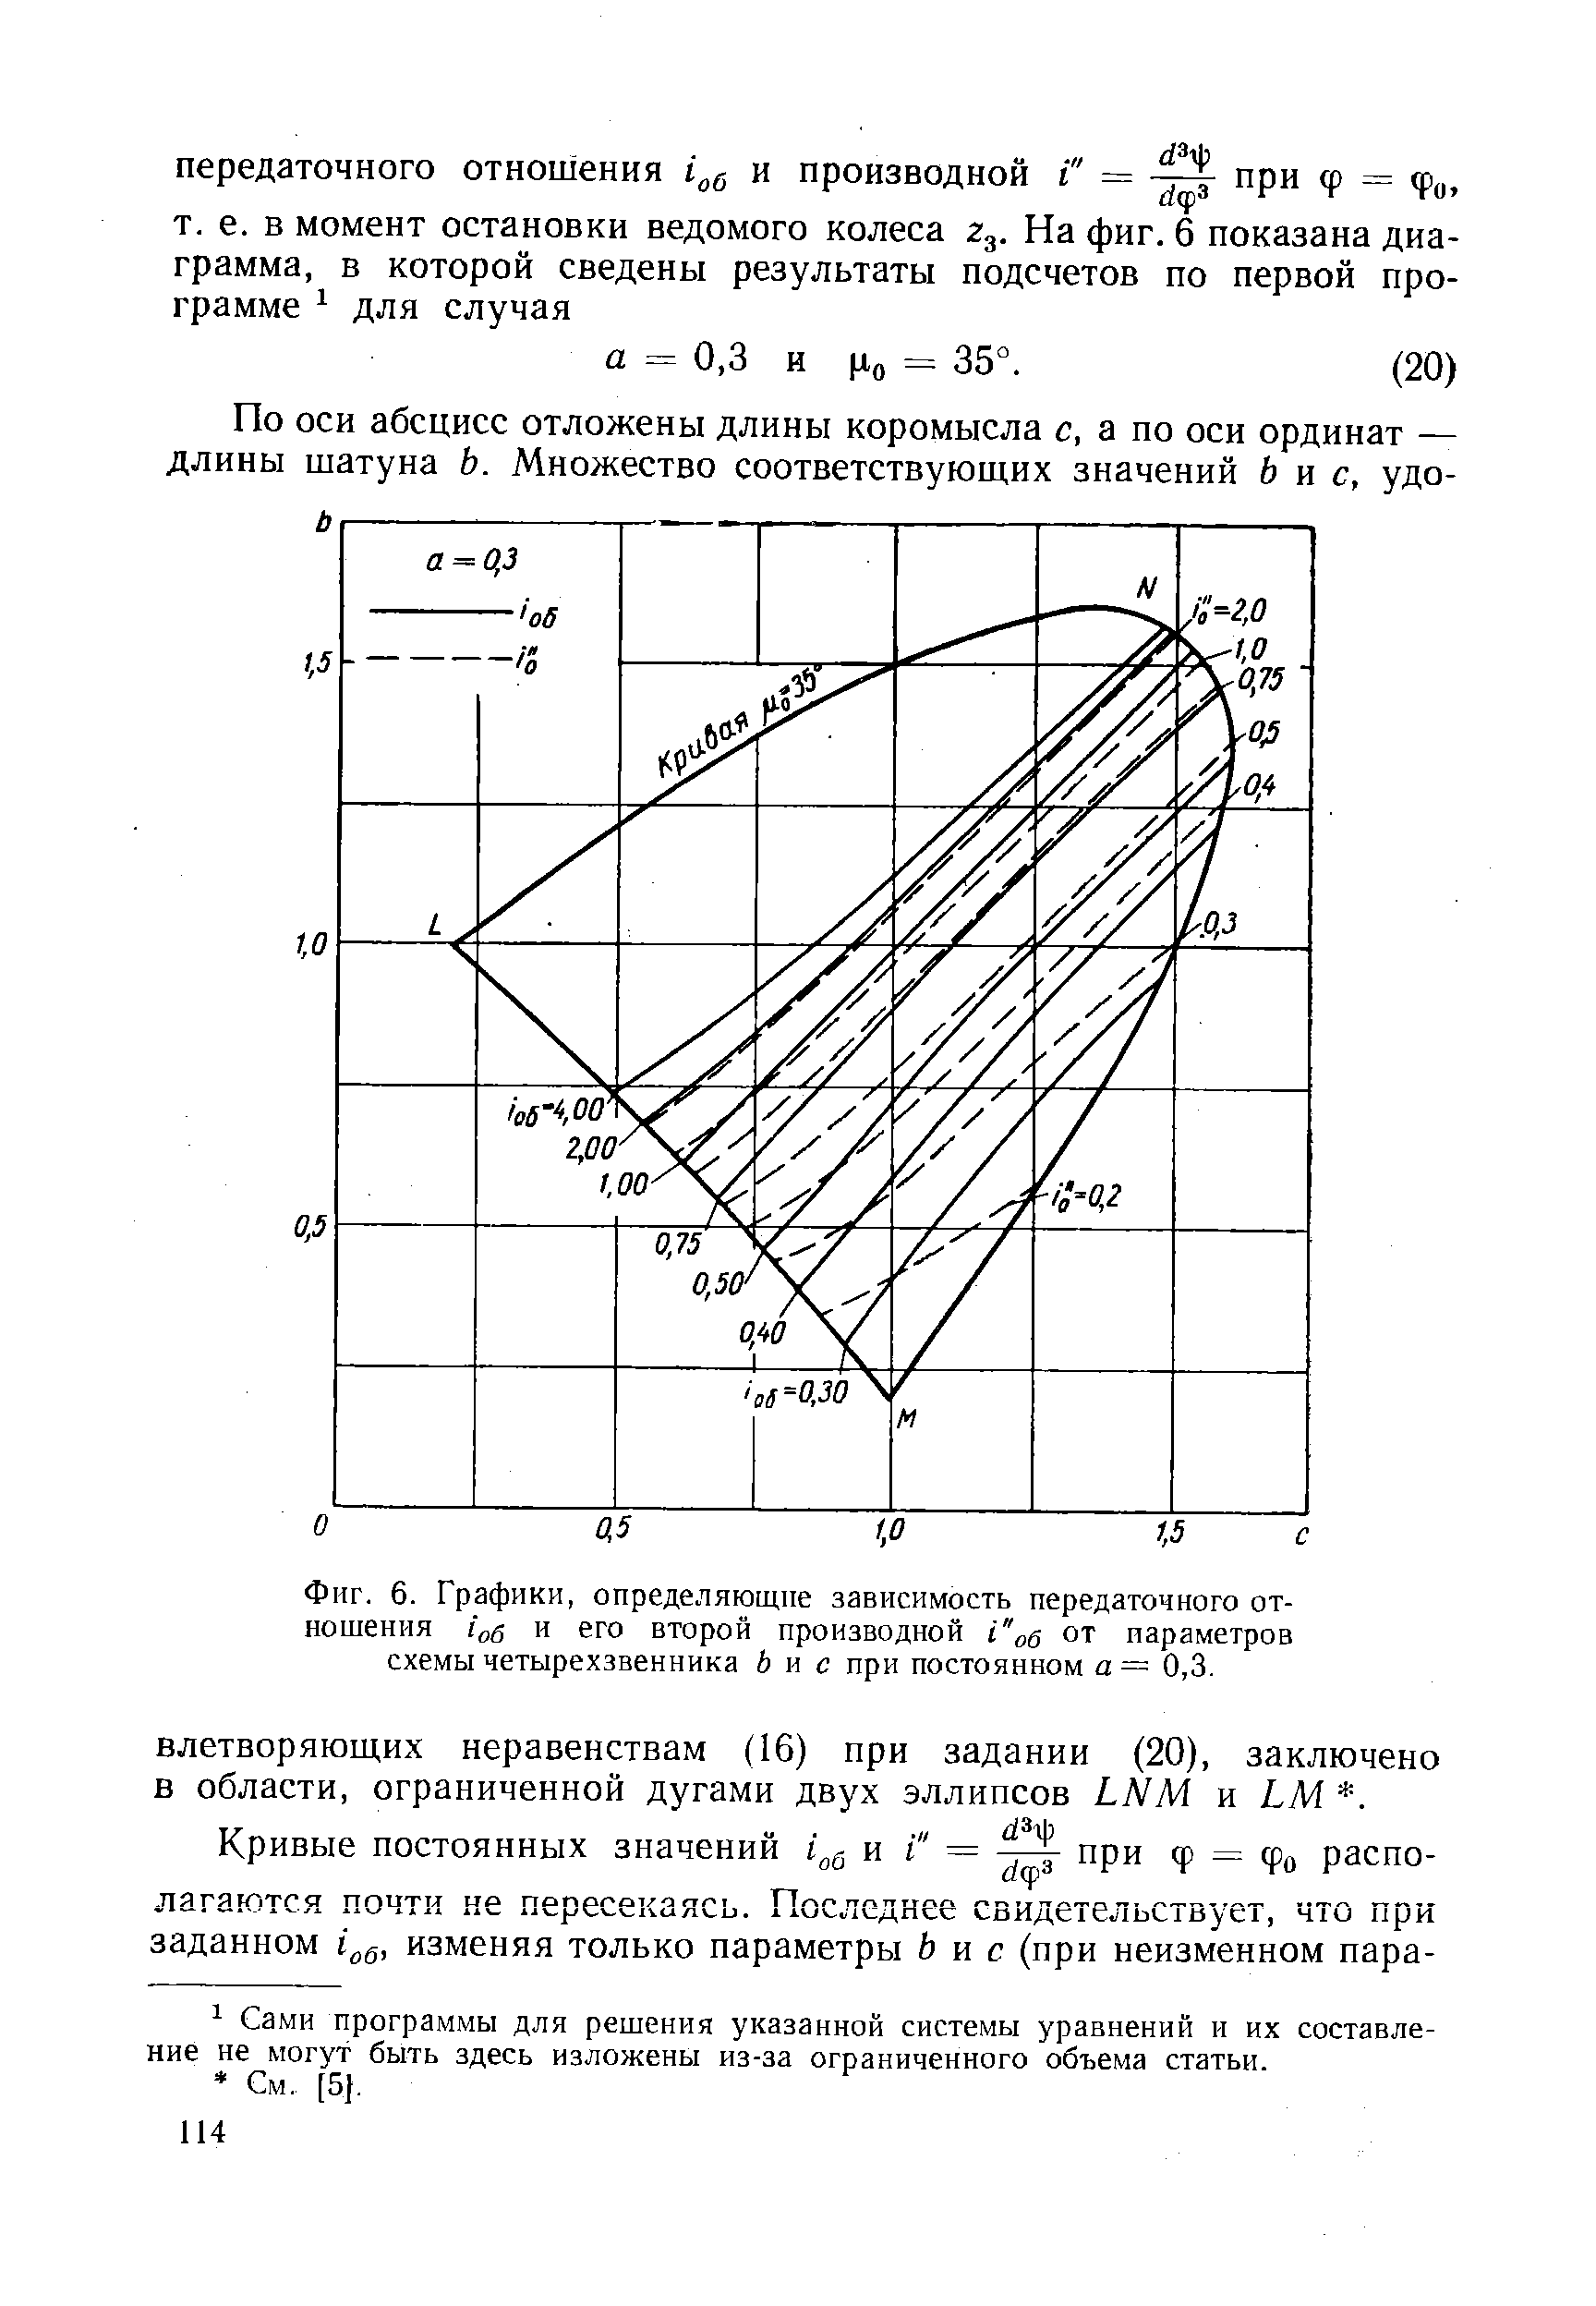 Фиг. 6. Графики, определяющие зависимость передаточного отношения г об и его второй производной от параметров схемы четырехзвенника бис при постоянном а = 0,3.
